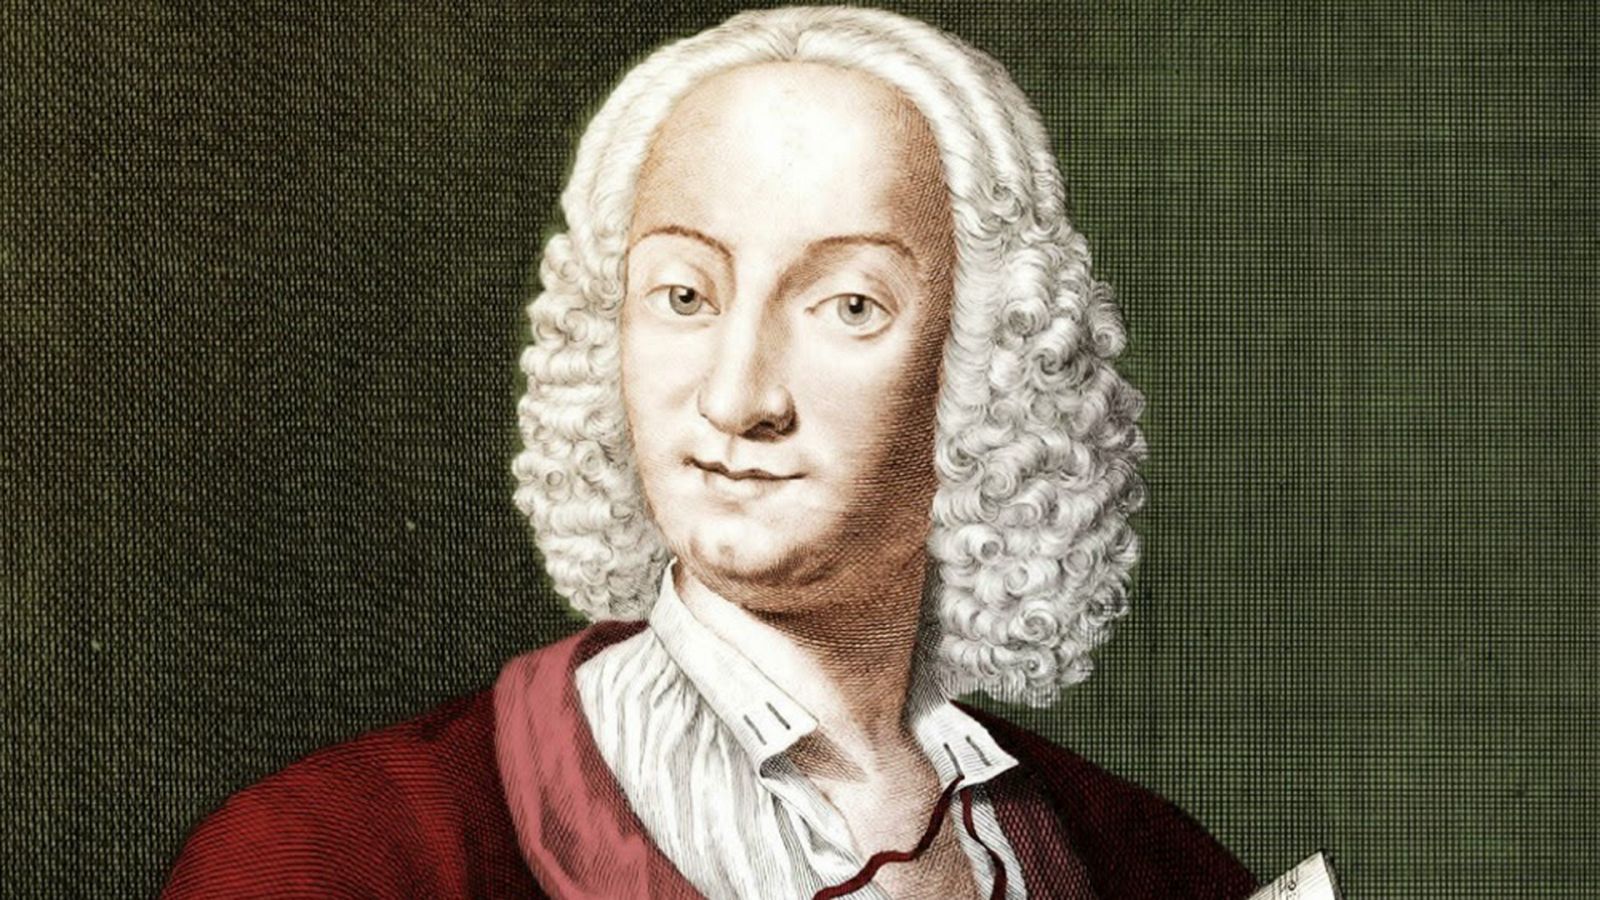 Retraro de Antonio Vivaldi